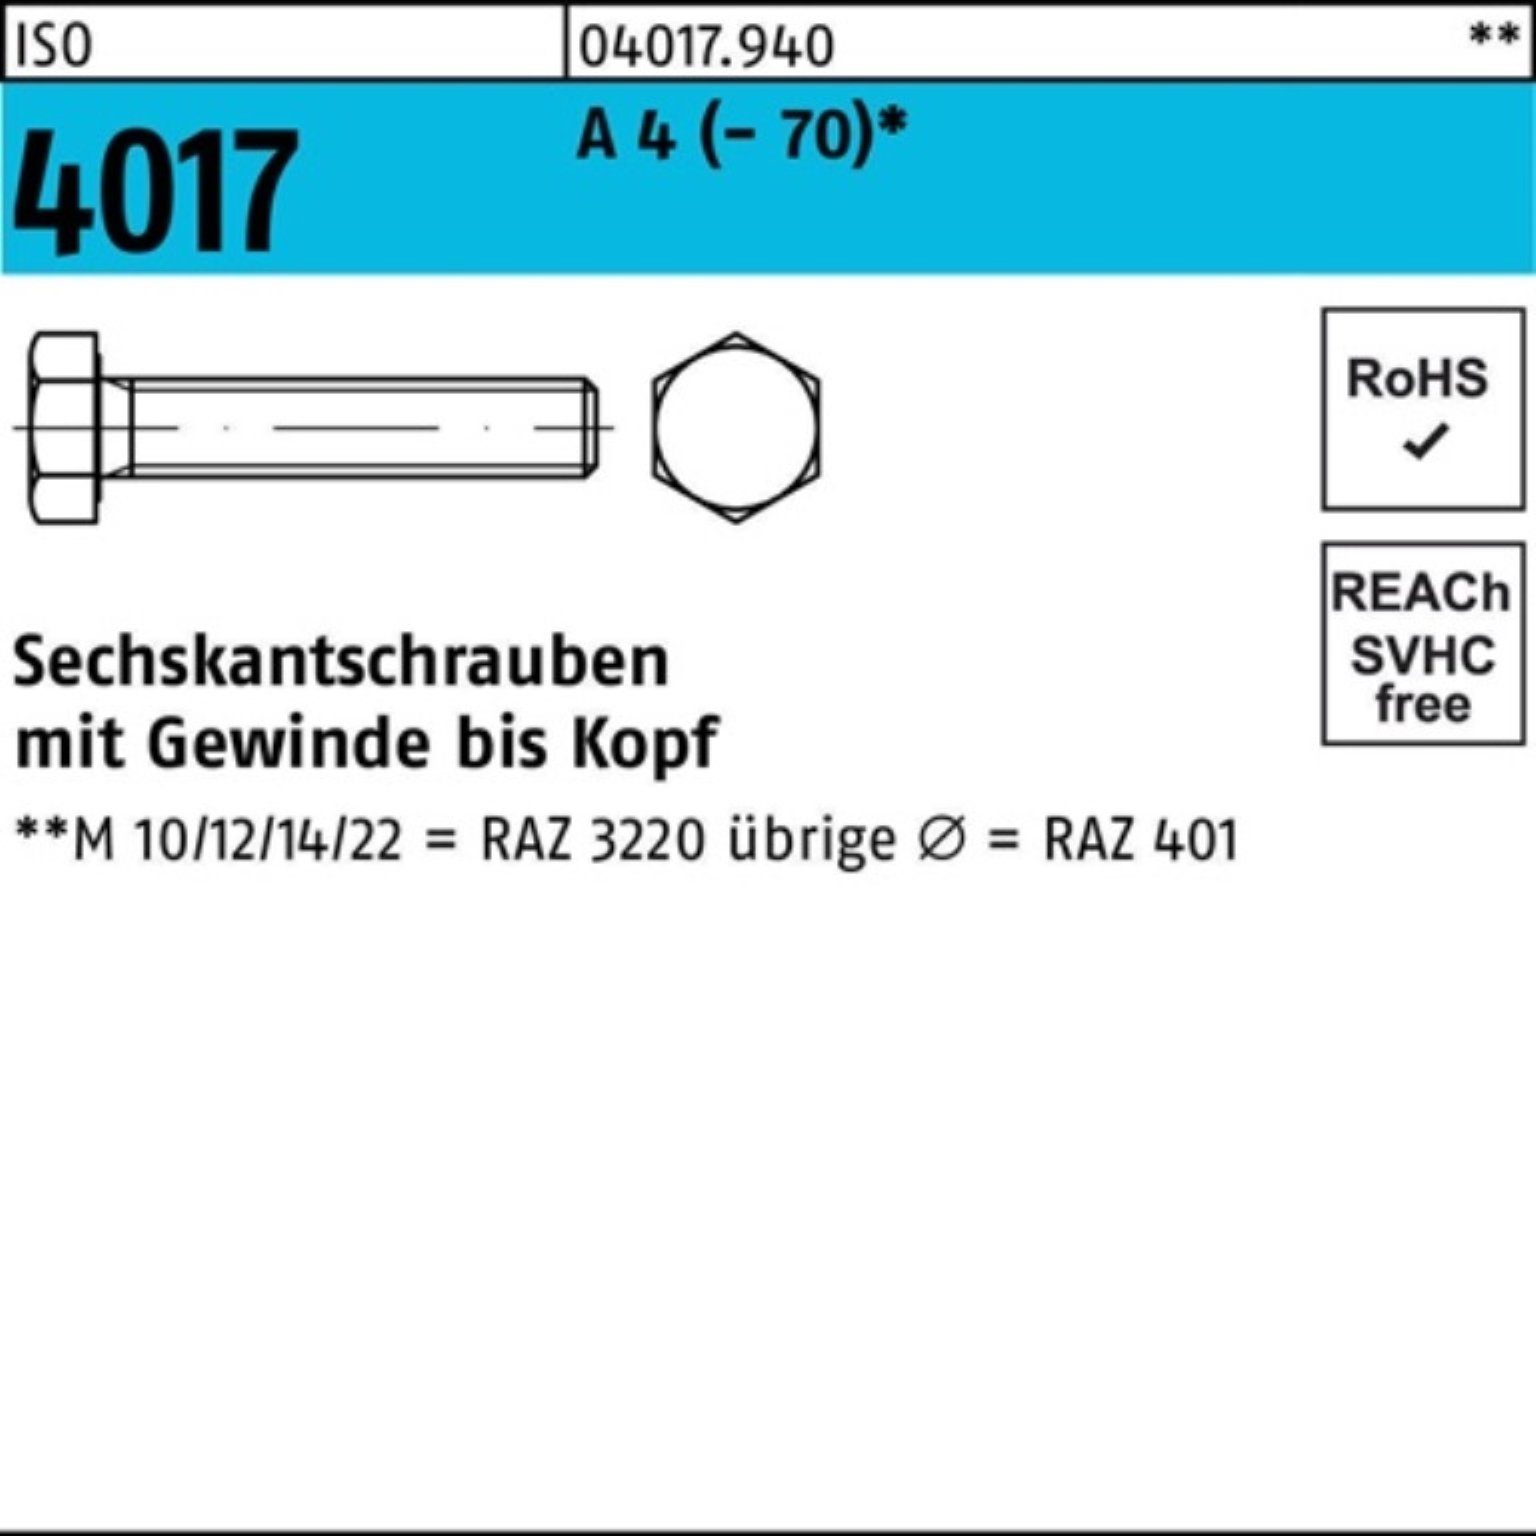 Bufab Sechskantschraube 100er Pack Sechskantschraube ISO 4017 VG M16x 180 A 4 (70) 1 Stück